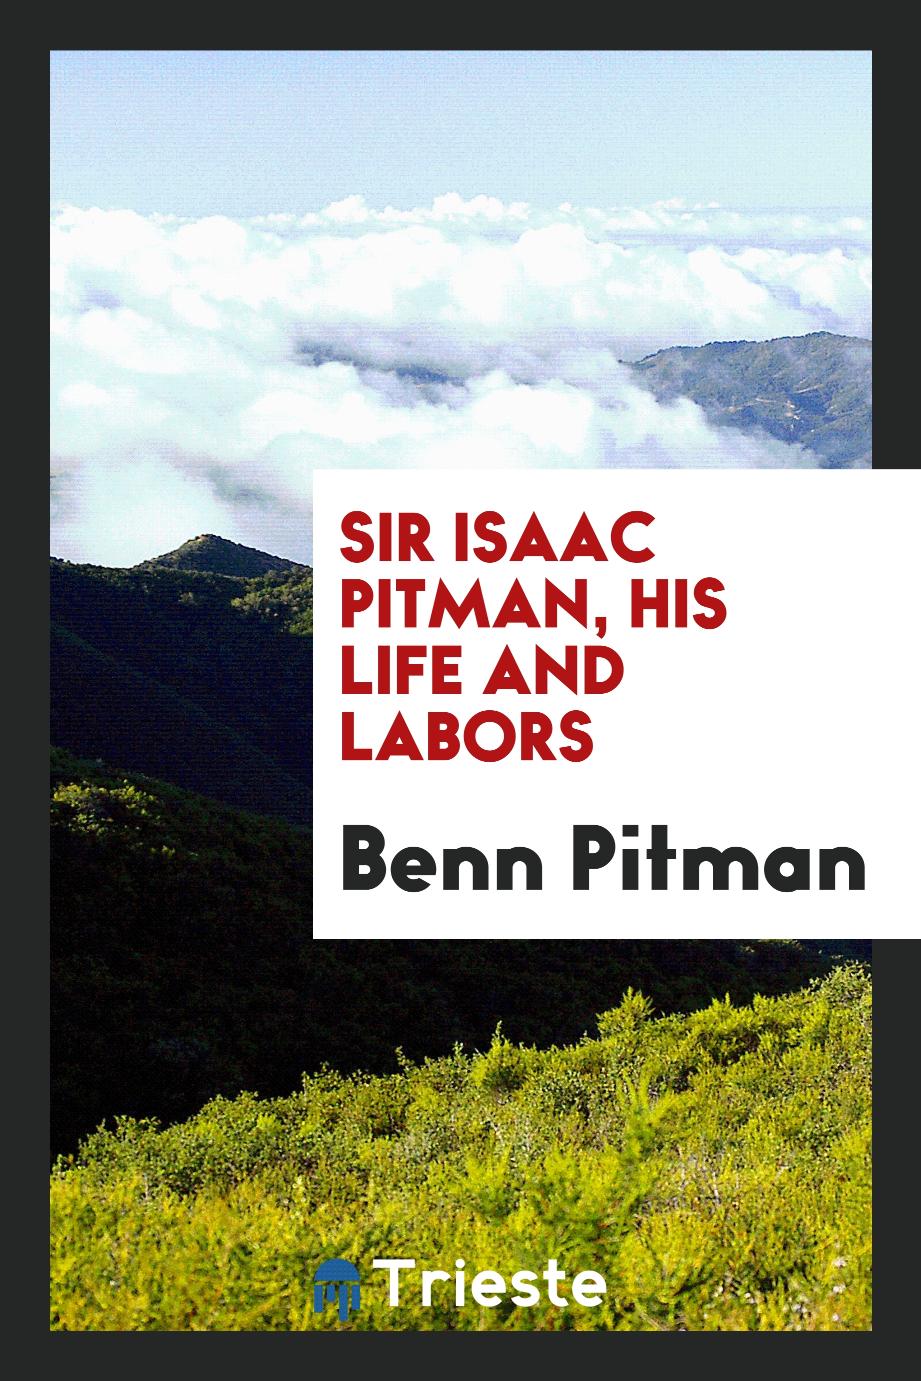 Sir Isaac Pitman, his life and labors